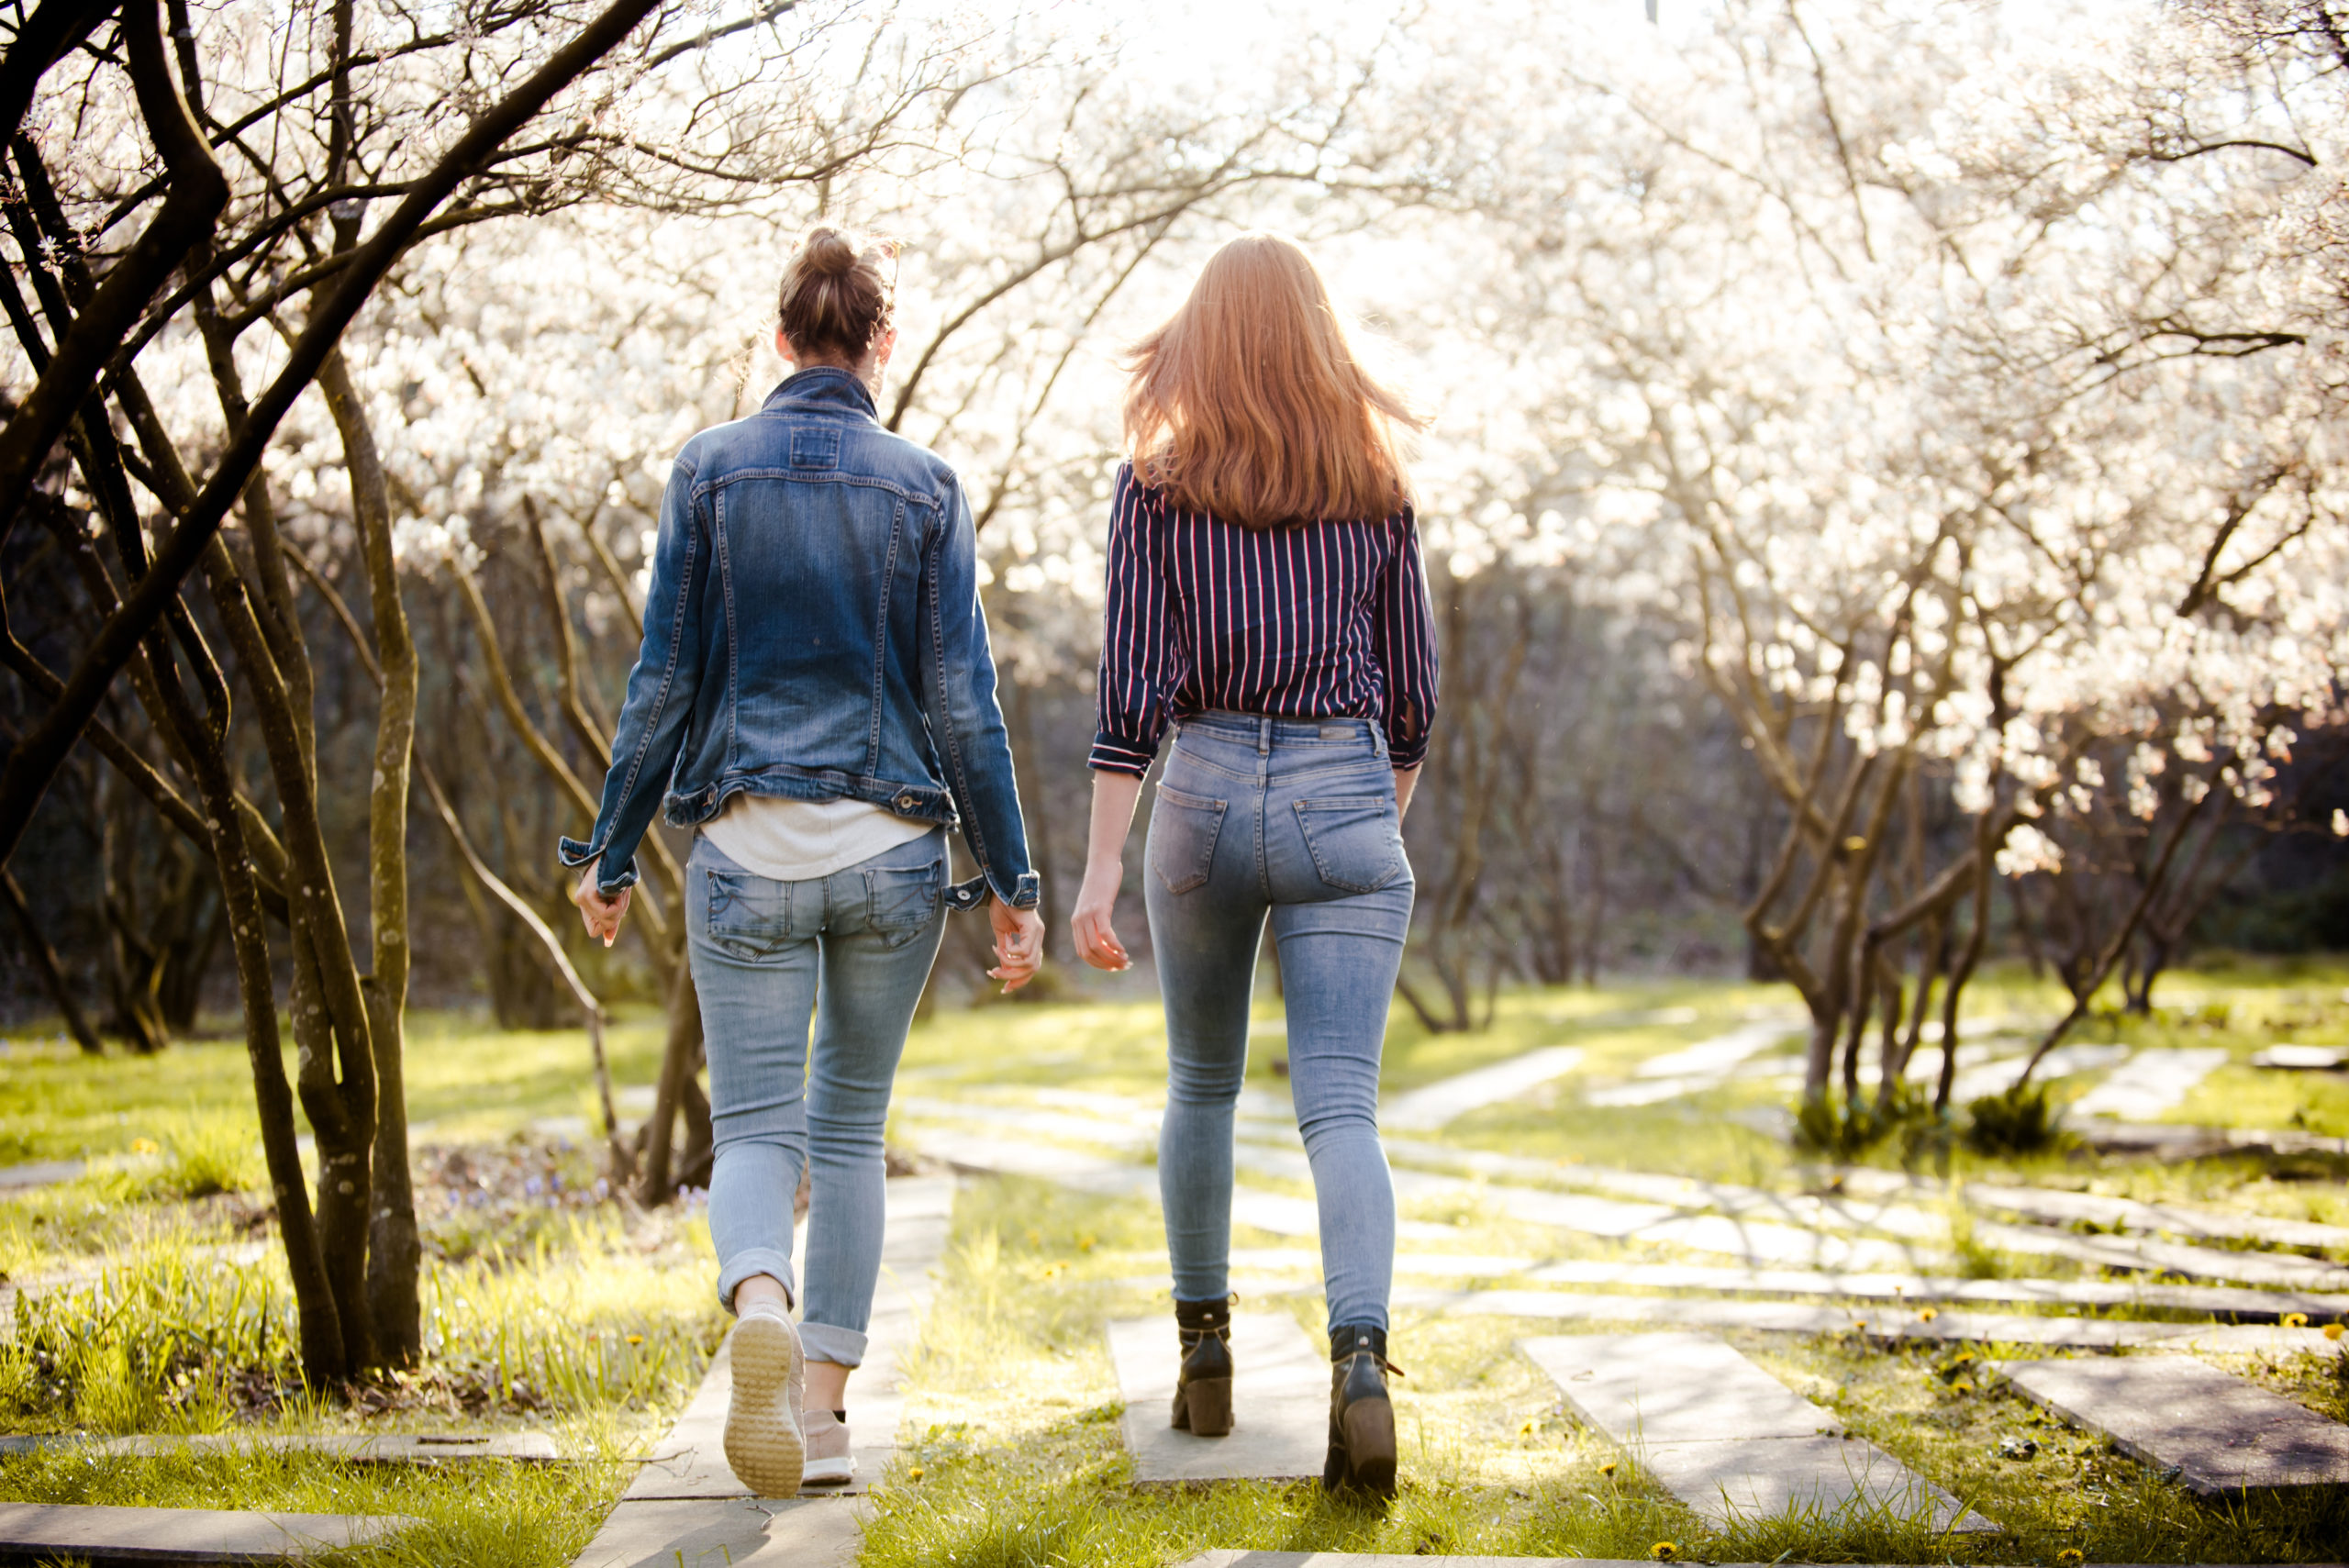 Naturumgebung mit Betonweg. Zwei Frauen spazieren gemeinsam, mit dem Rücken zur Kamera gerichtet. Beide tragen helle Jeans, die eine eine Jeansjacke, die andere eine leichte, dunkle Bluse.